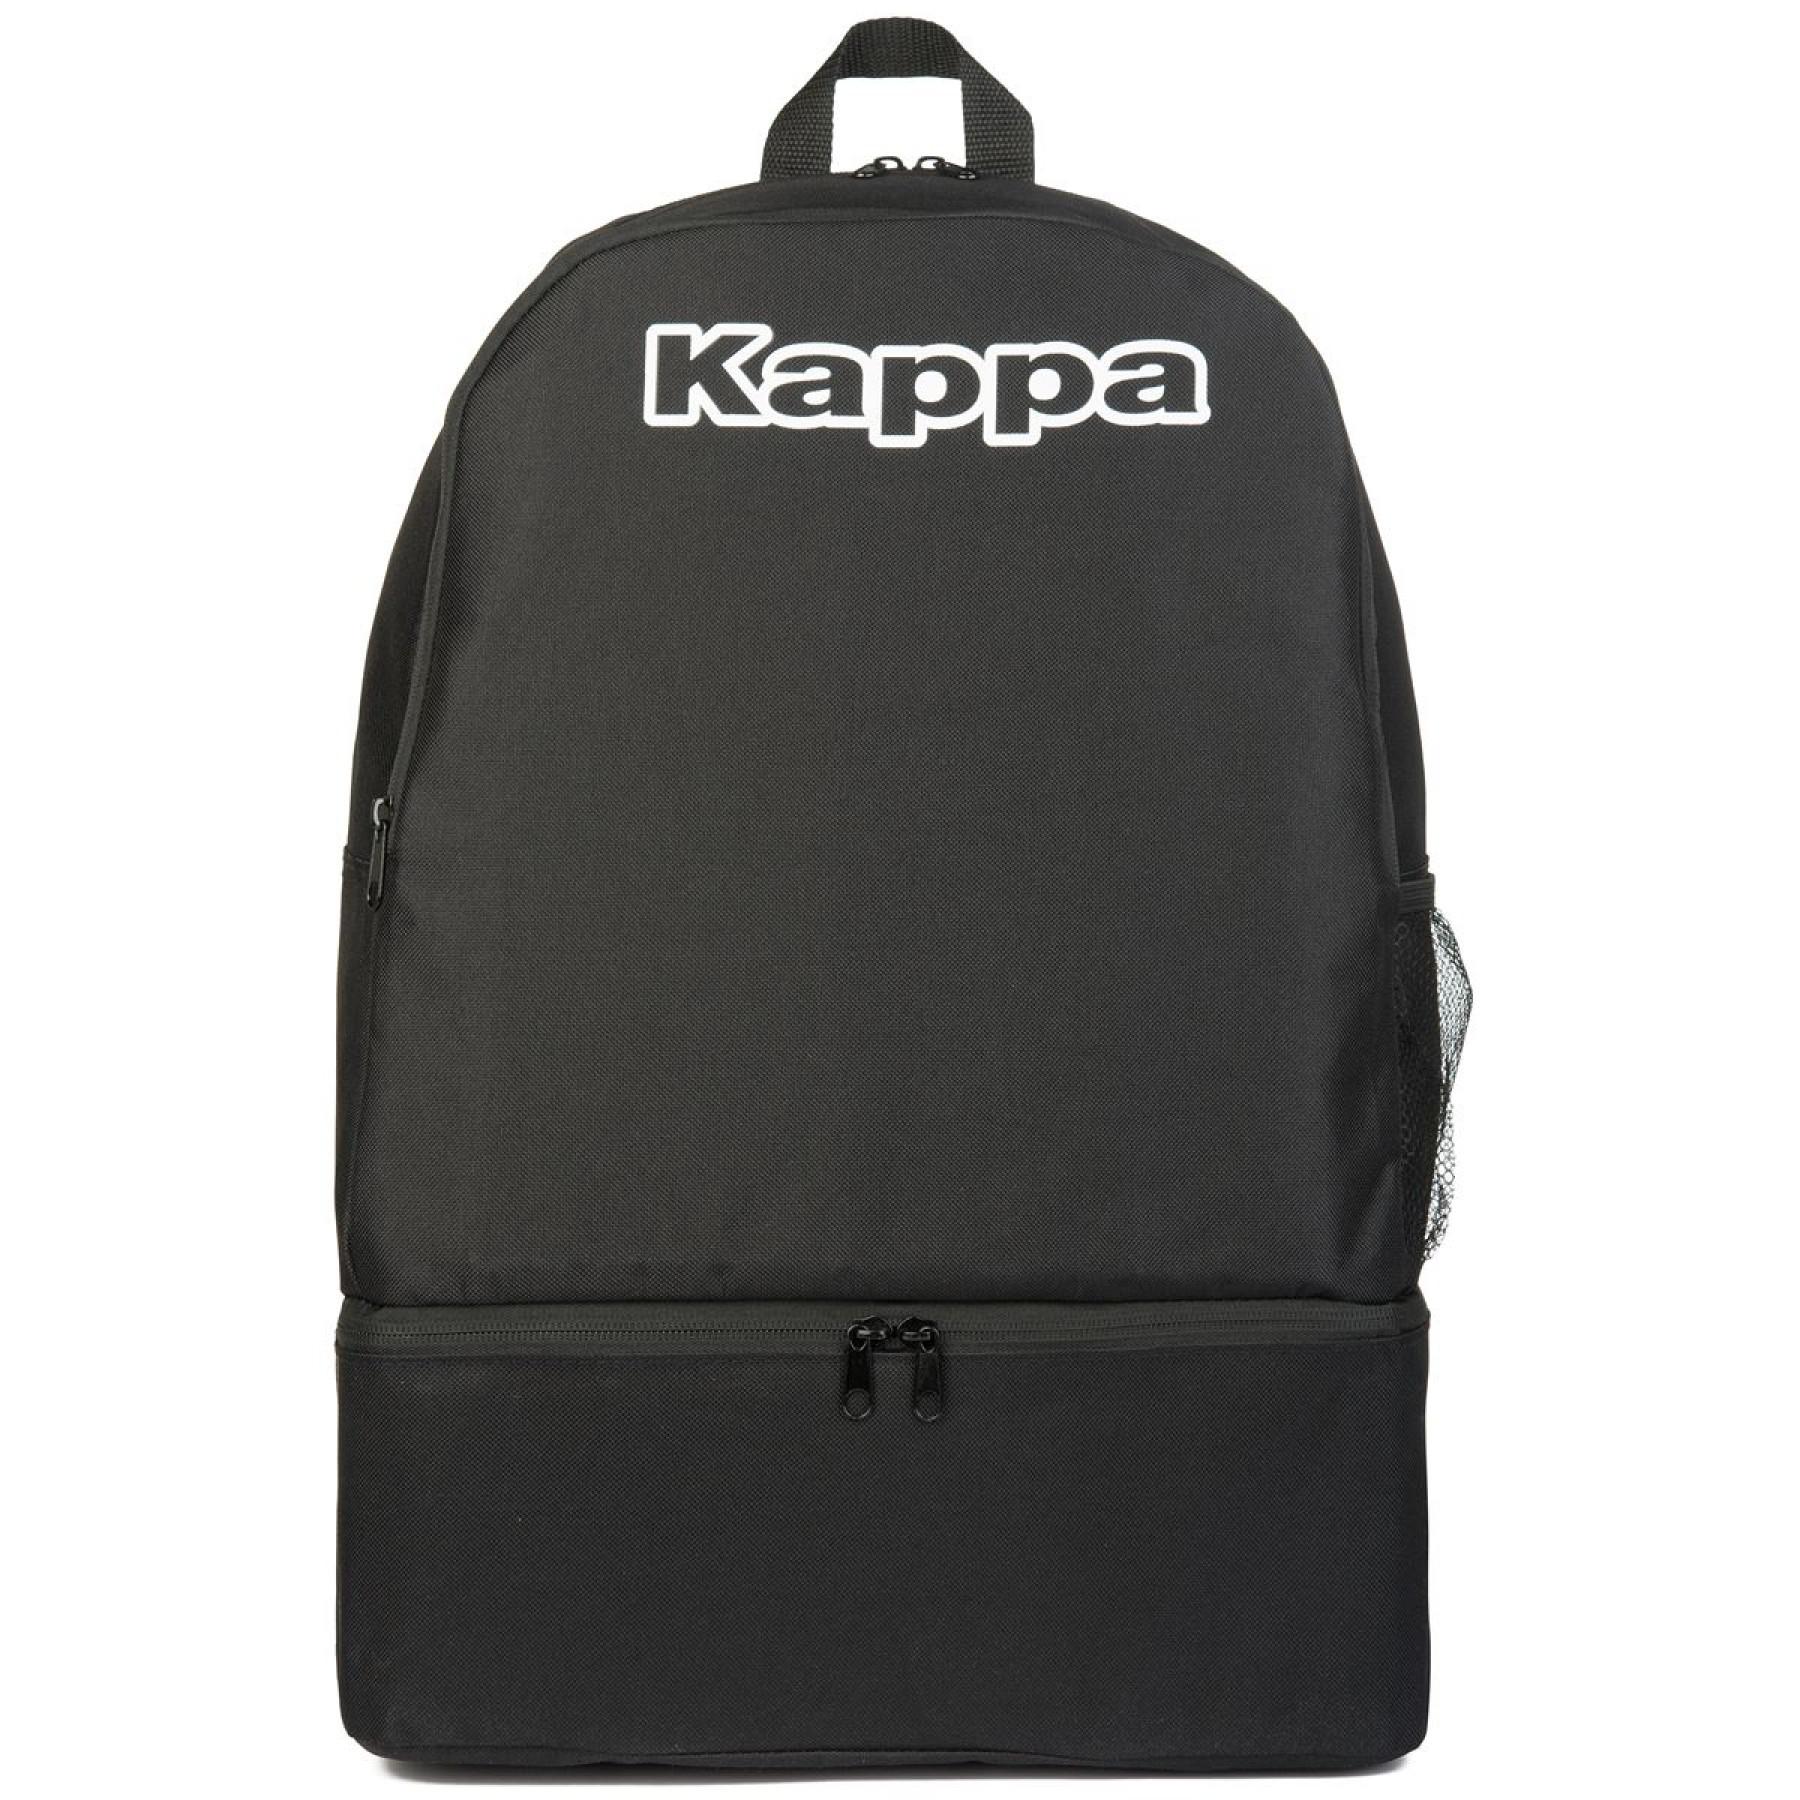 Backpack Kappa Backpack - Kappa - Bags - Equipment